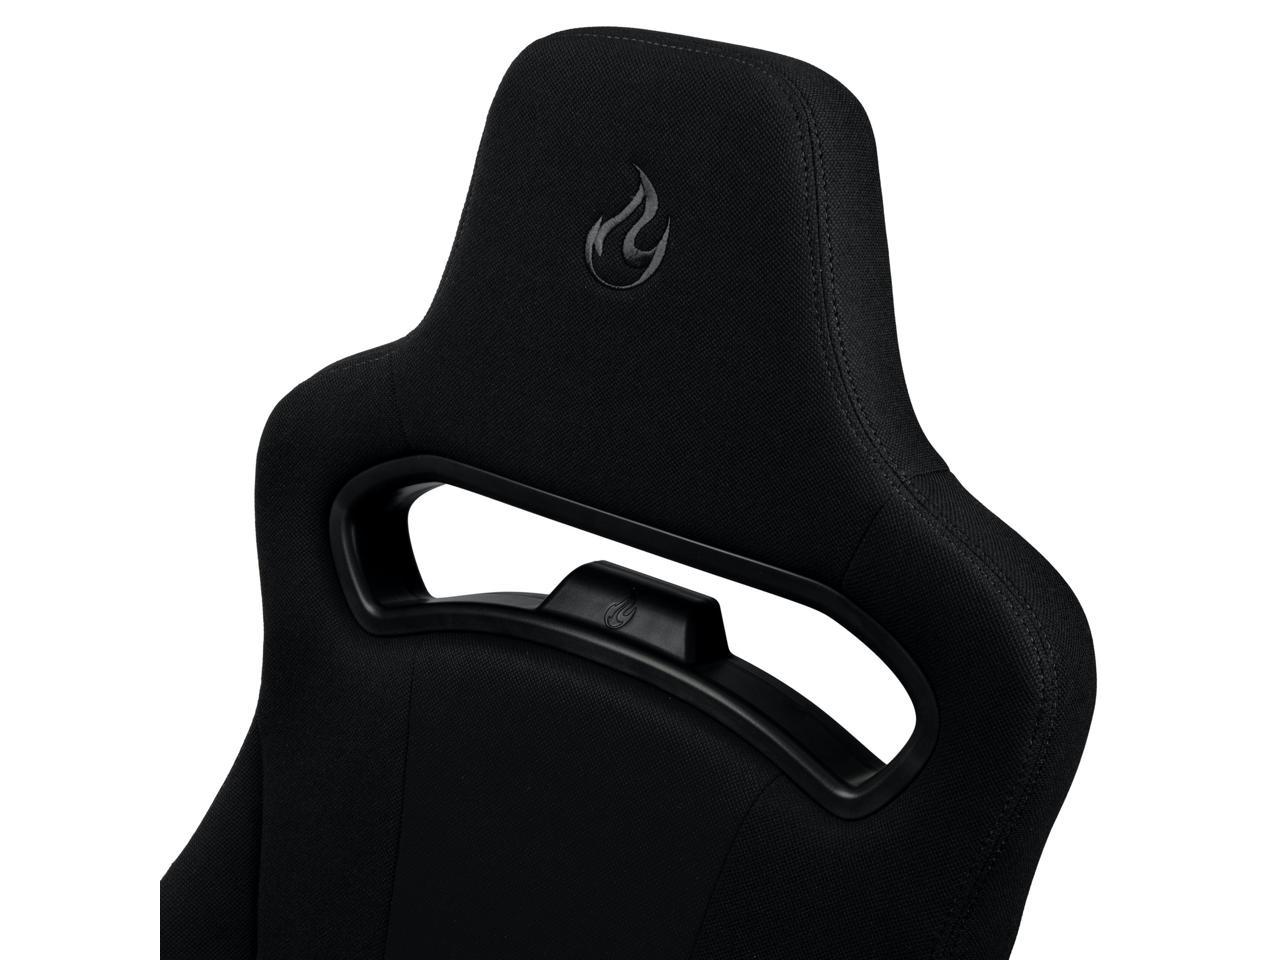 Nitro Concepts E250 Gaming Chair Black Newegg Com